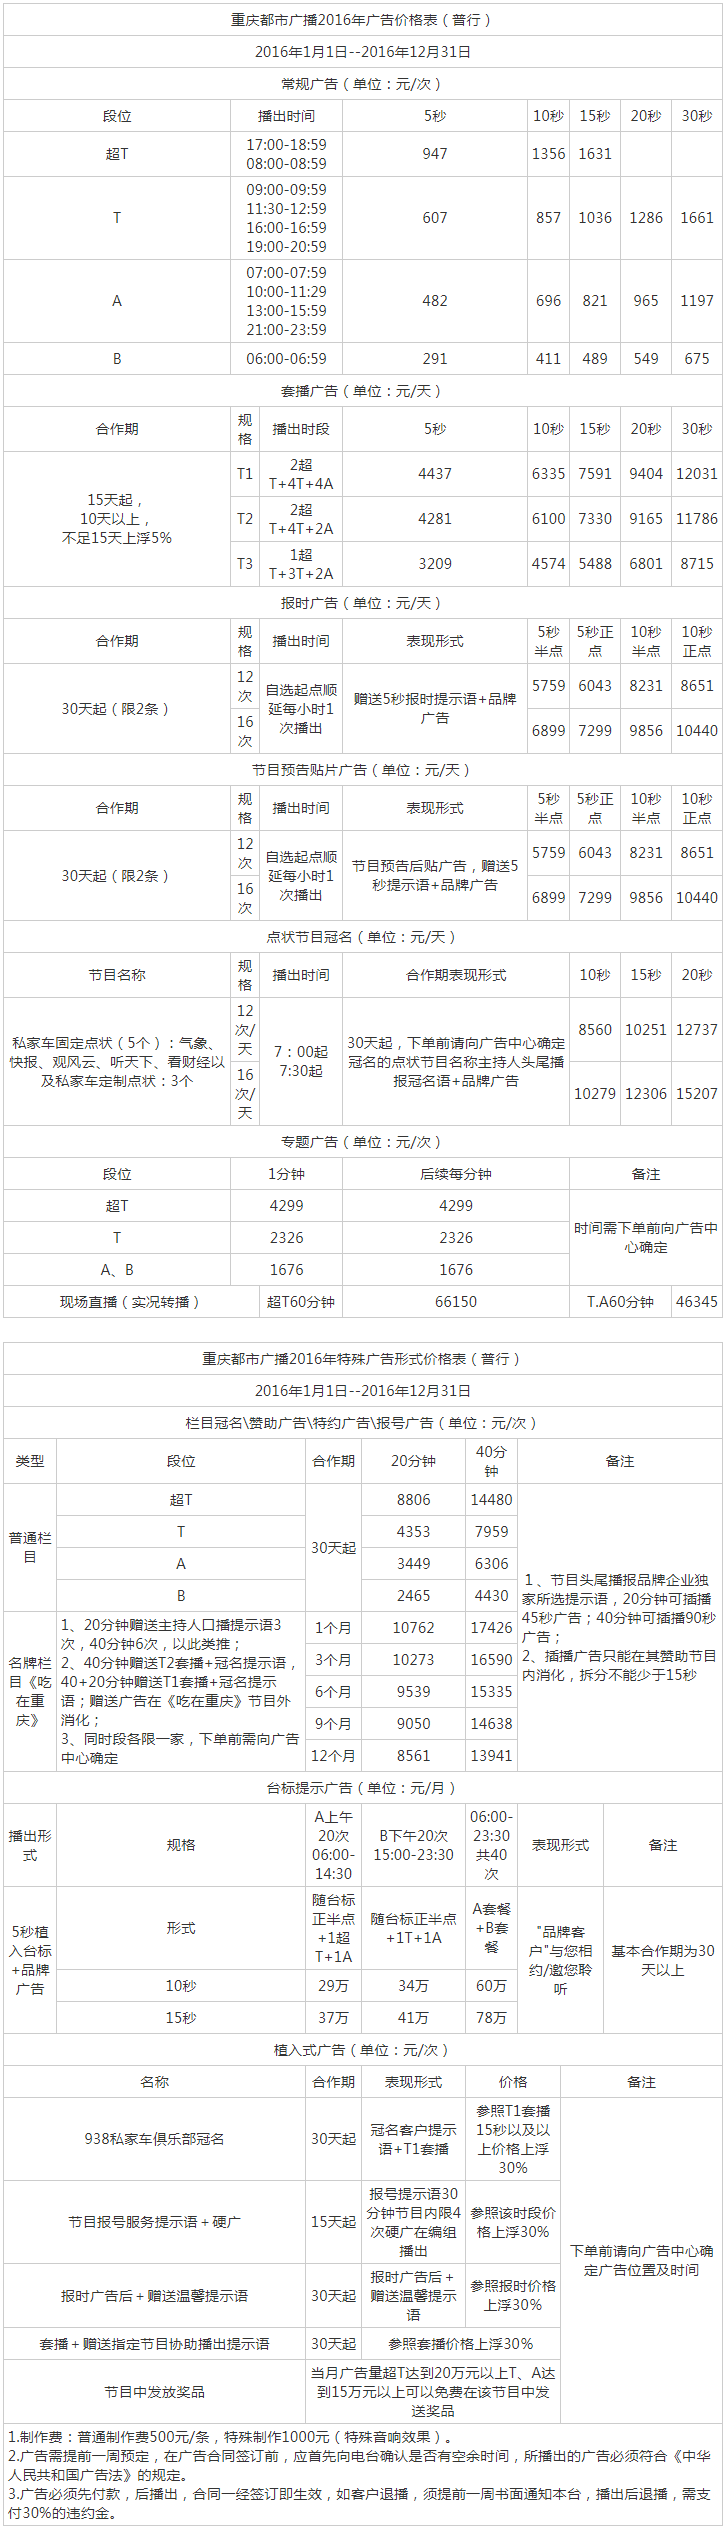 2016重庆人民广播电台都市频率 FM93.8广告报价表.png